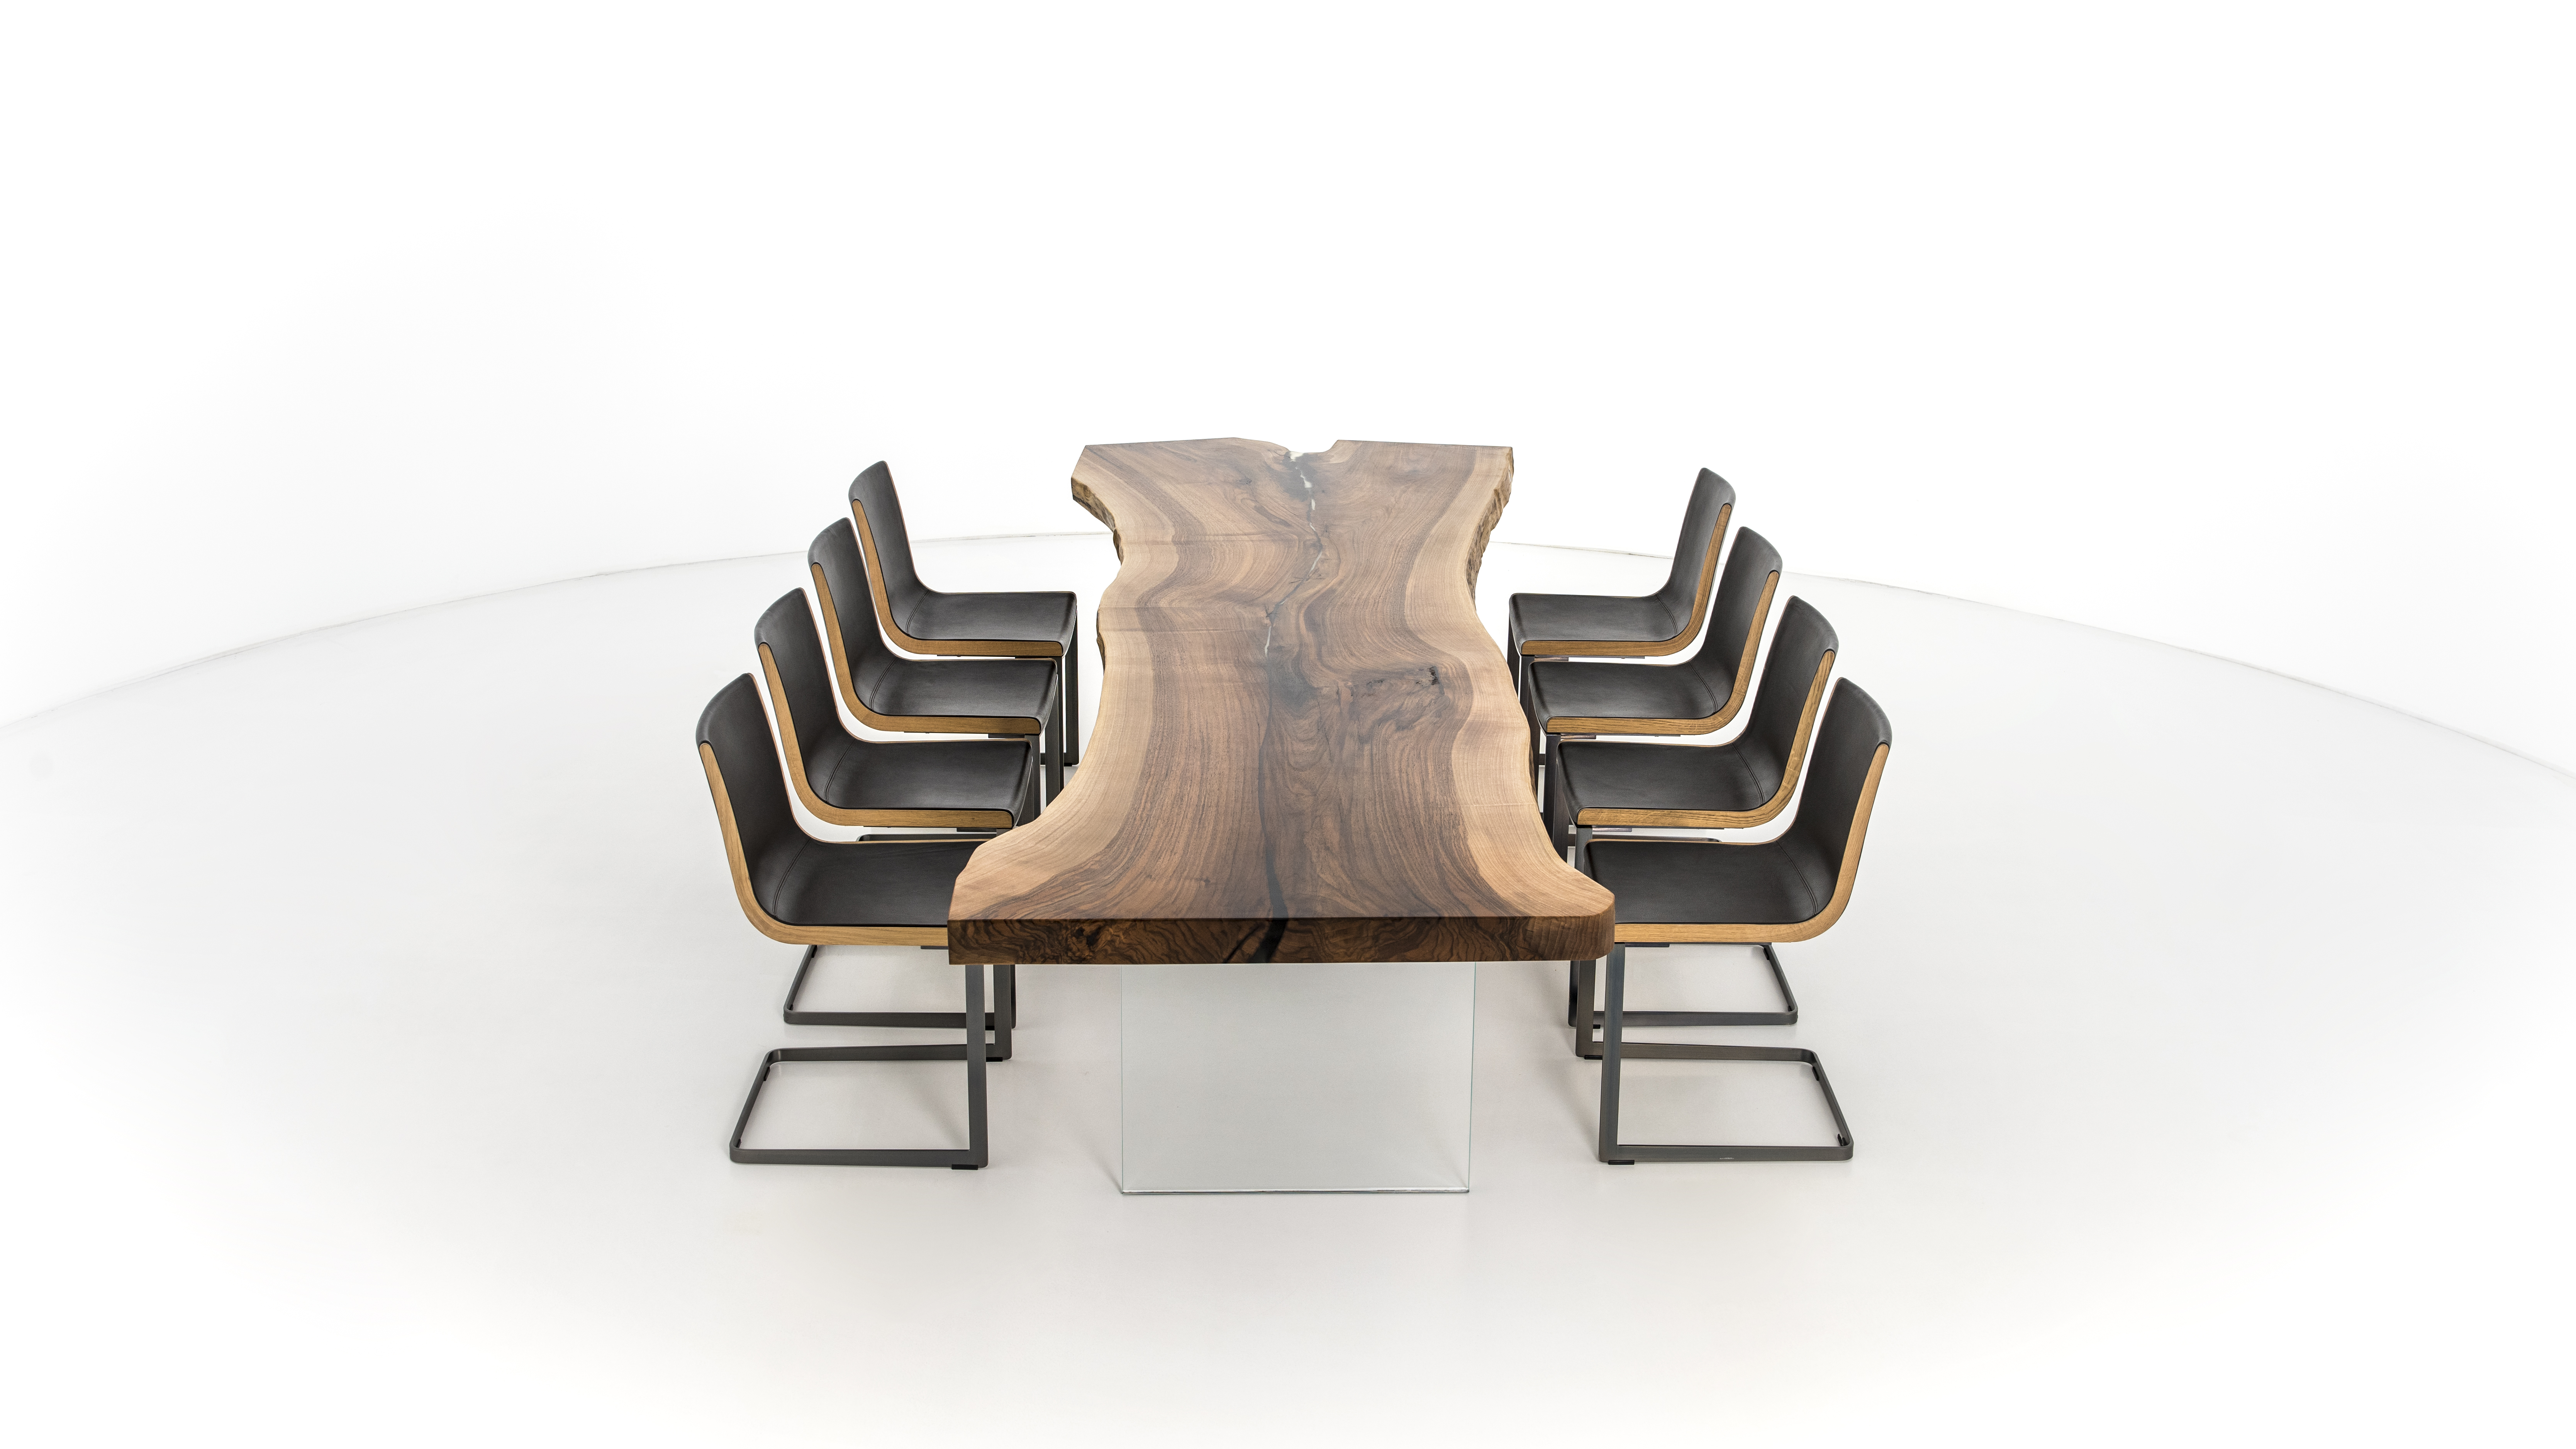 Table de tronc d'arbre design en bois vue à 360° du produit